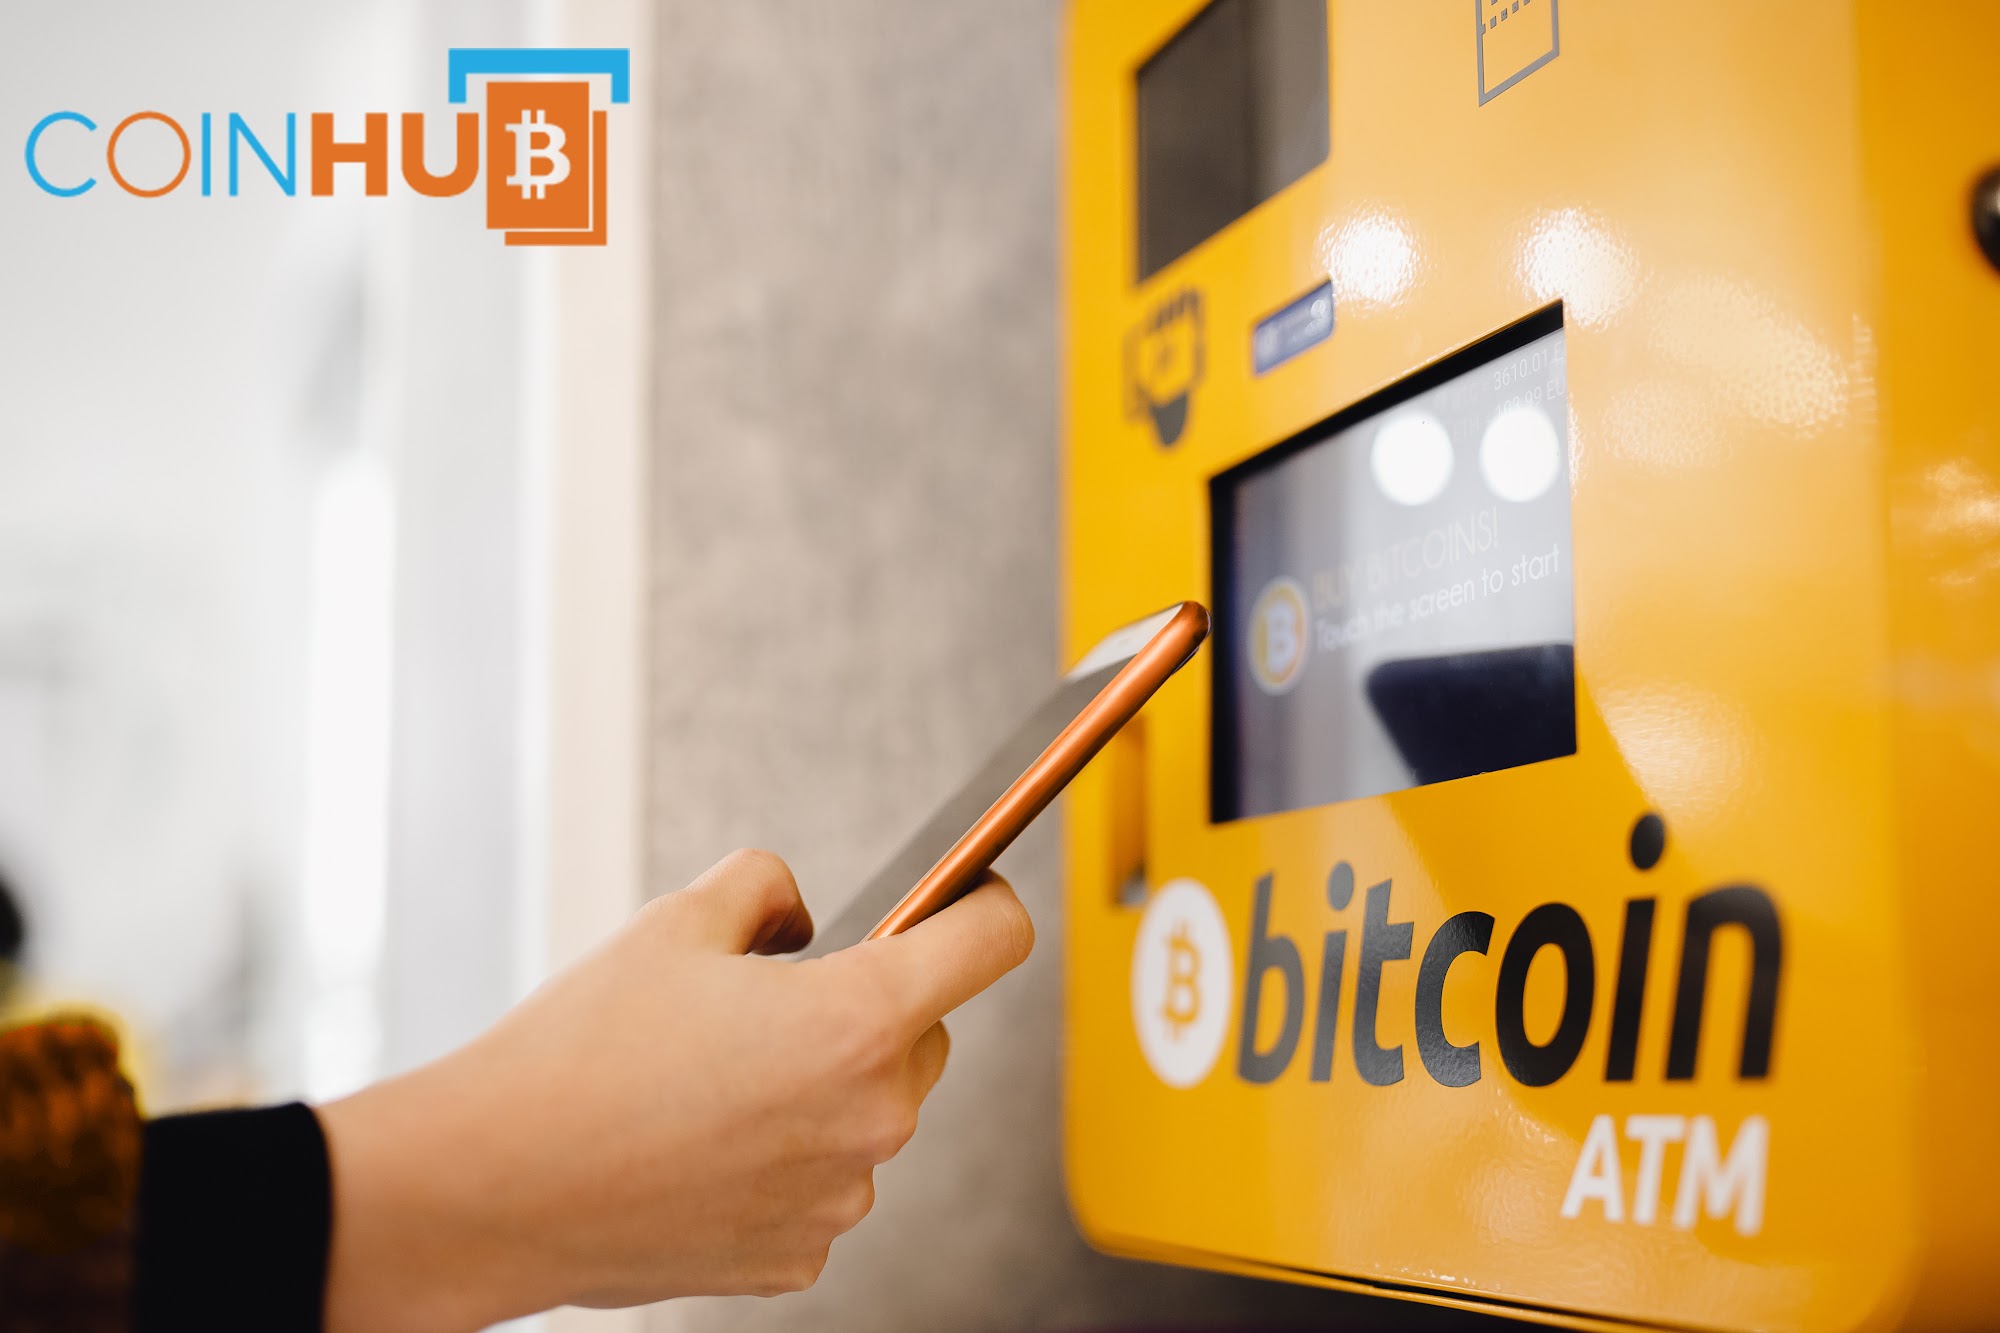 Bitcoin ATM Bechtelsville - Coinhub